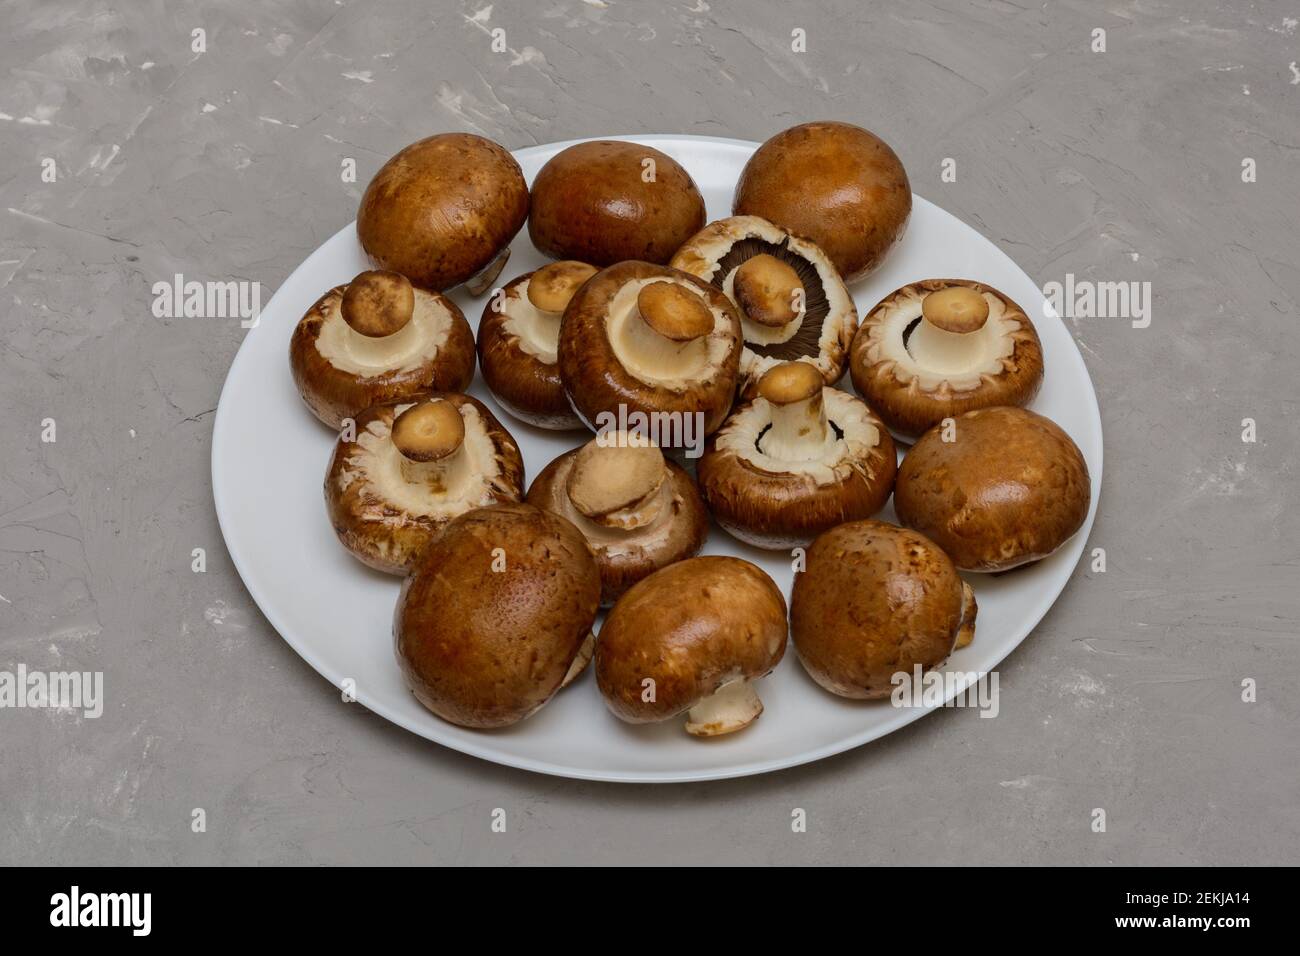 Royal champignons marrone. Funghi freschi su piatto bianco. Fondo grigio cemento grigio. Foto Stock